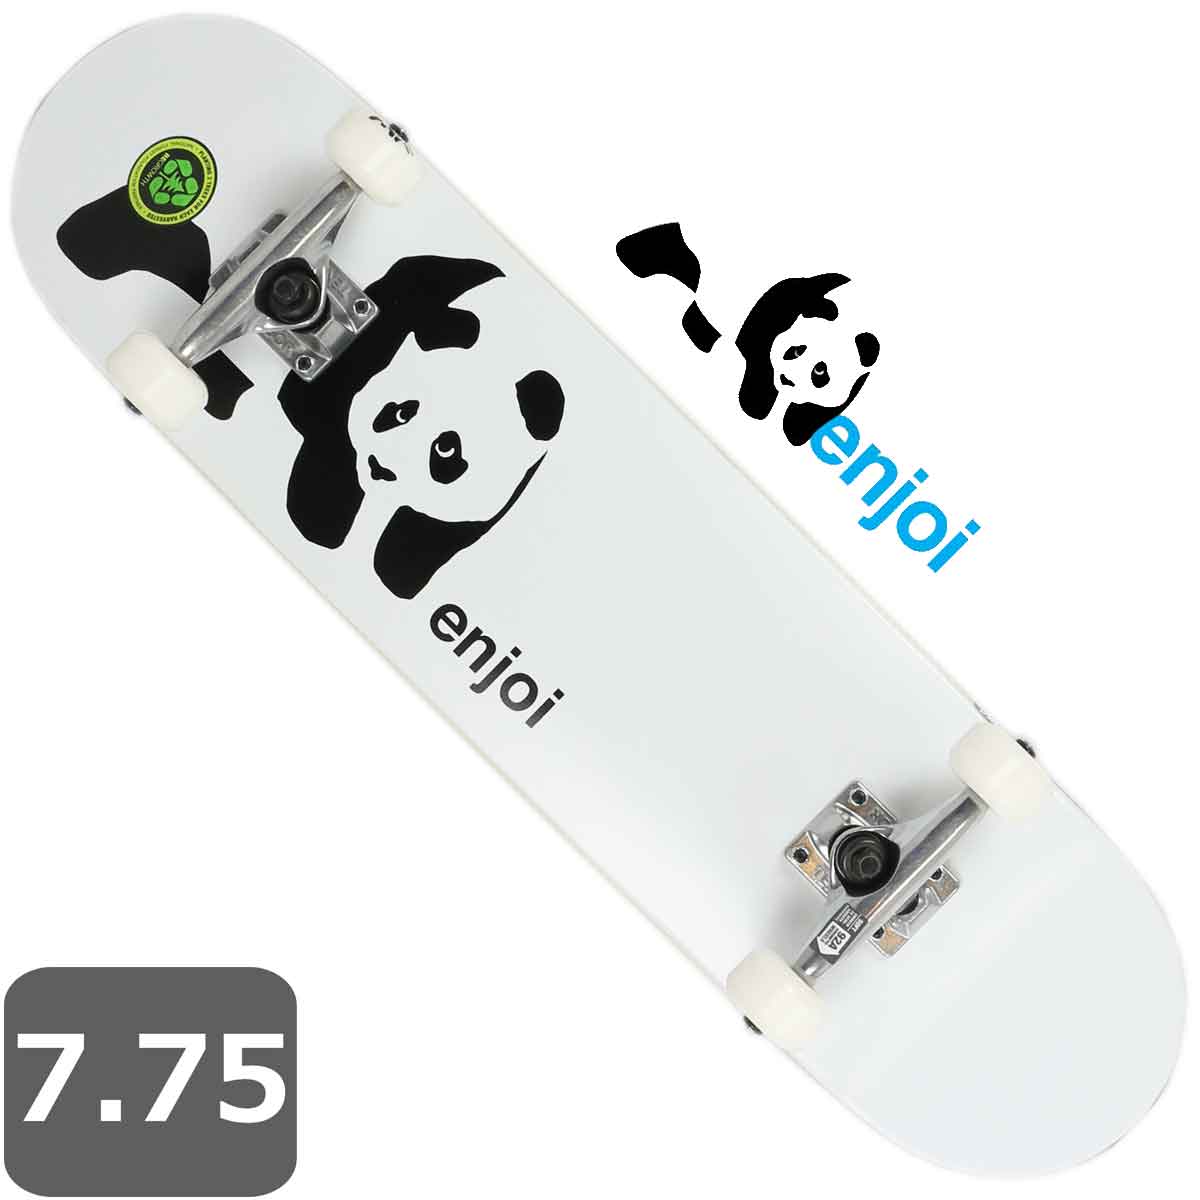 パンダスケートボード コンプリート エンジョイ Panda enjoi Complete 7.75 インチ 純正スケボー スケート 完成品 初心者